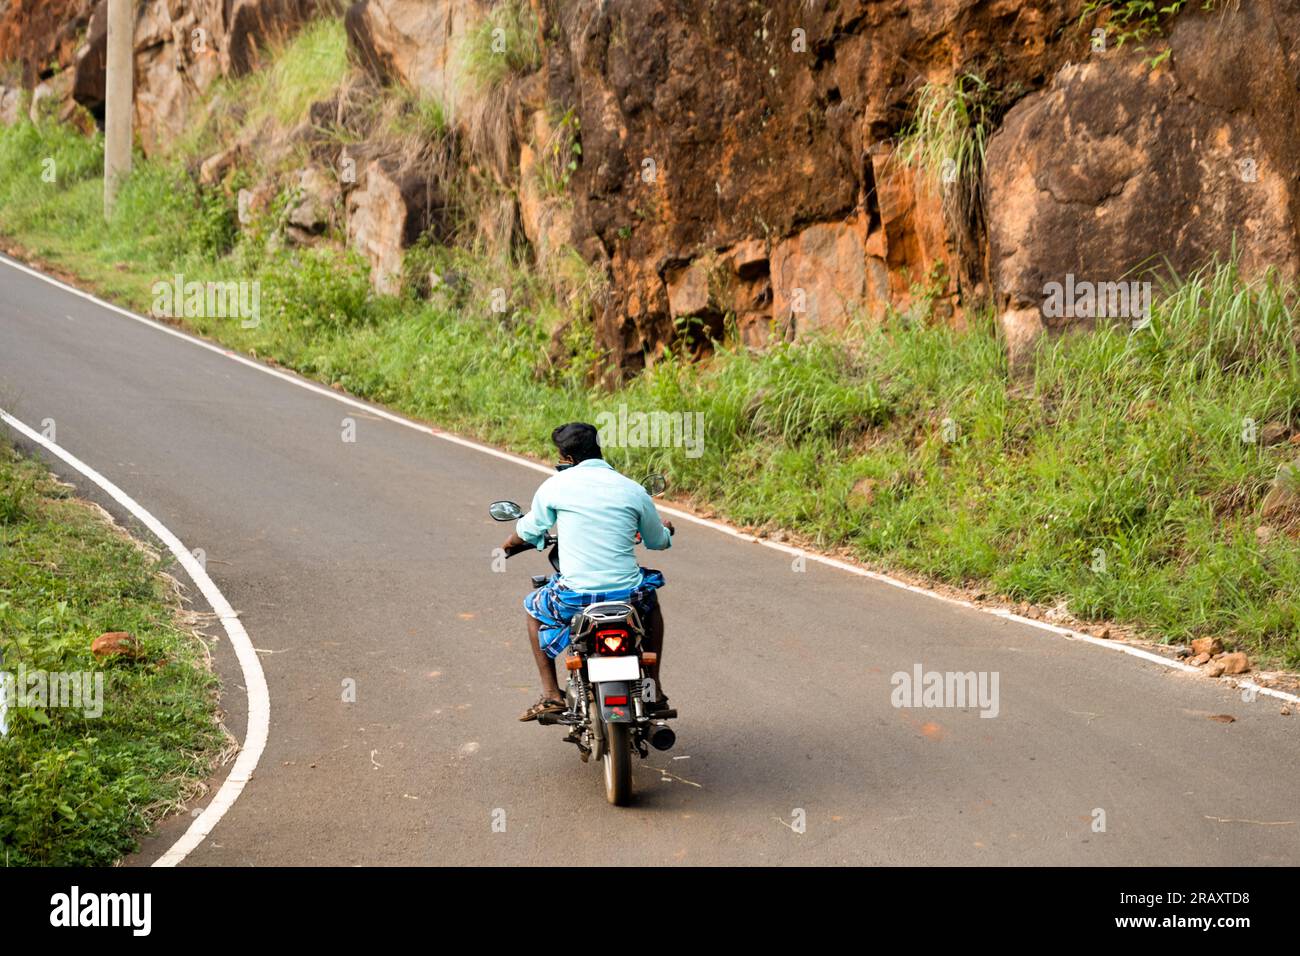 Machen Sie Fotos von Indianern, indem Sie sich während der Motorradfahrt mit einem Mobiltelefon unterhalten. Stockfoto